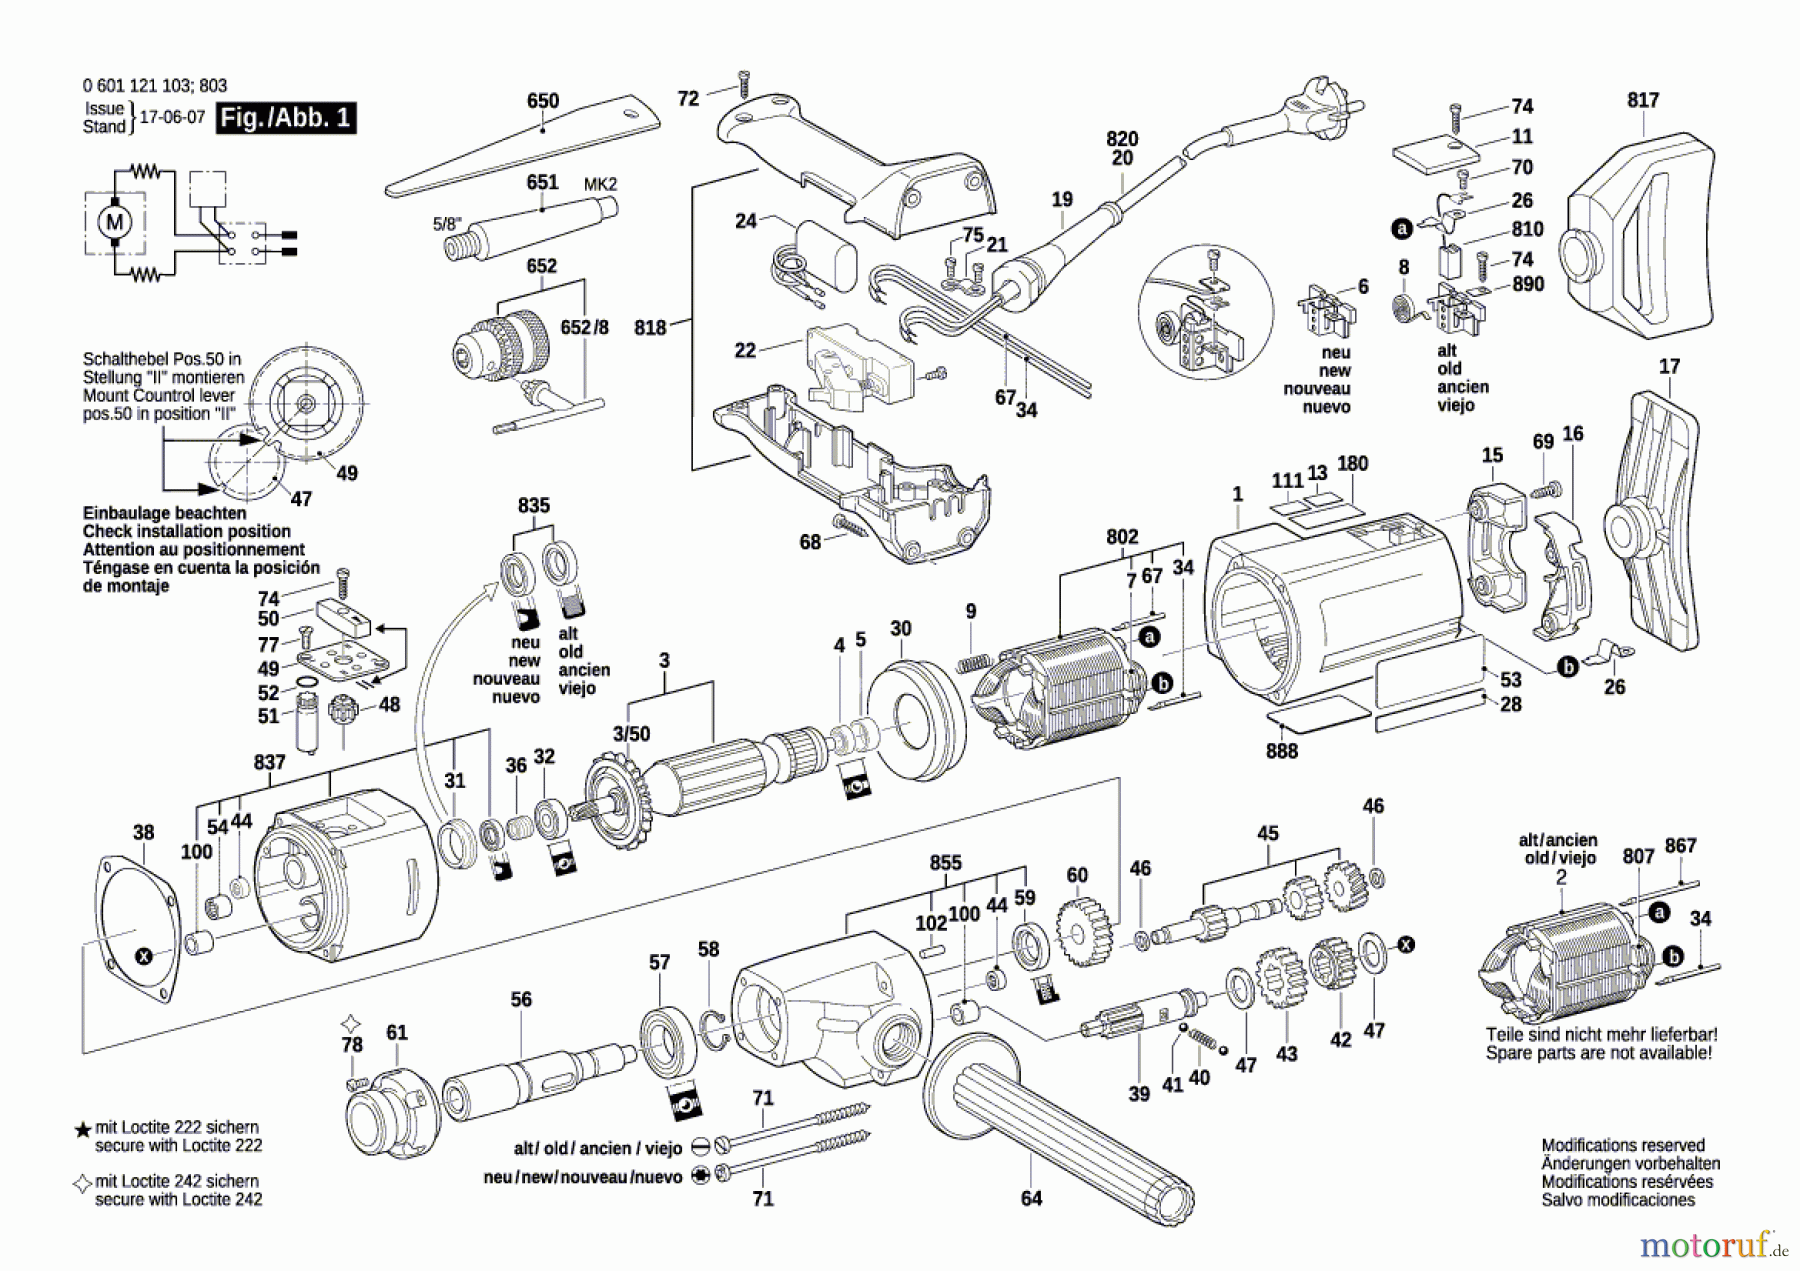  Bosch Werkzeug Bohrmaschine GBM 23-2 Seite 1